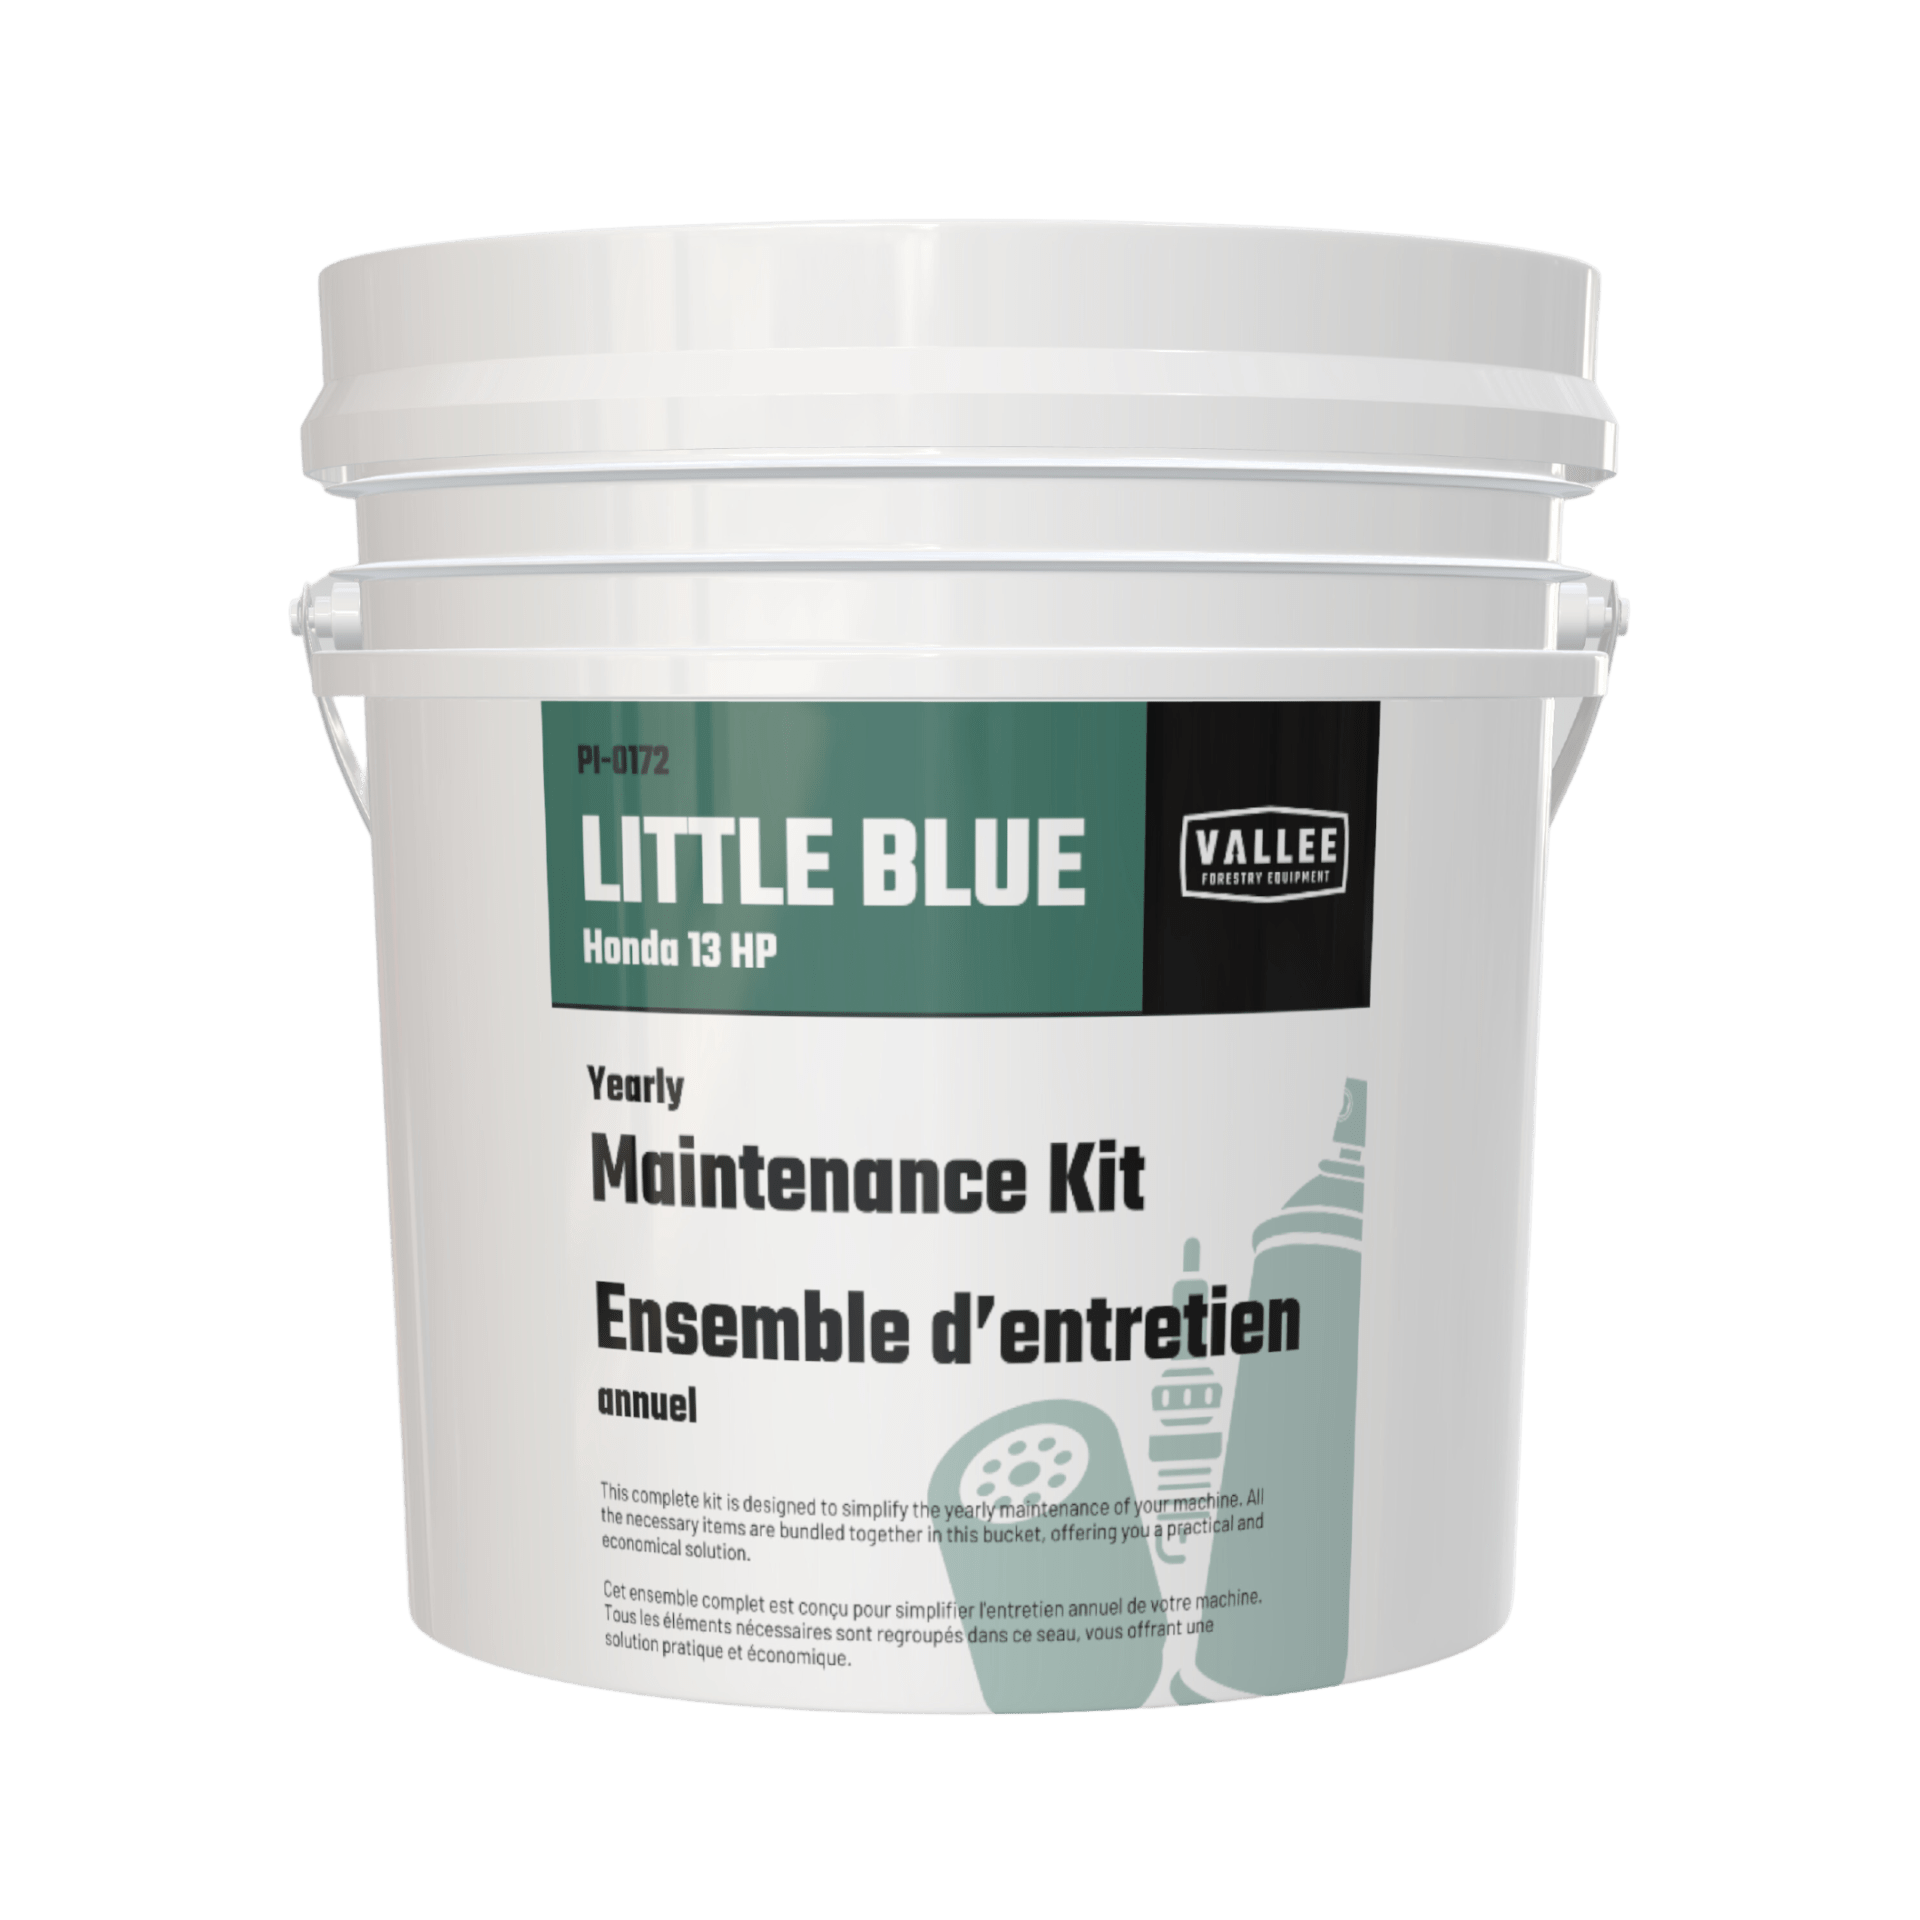 Maintenance Kit for Little Blue 13HP